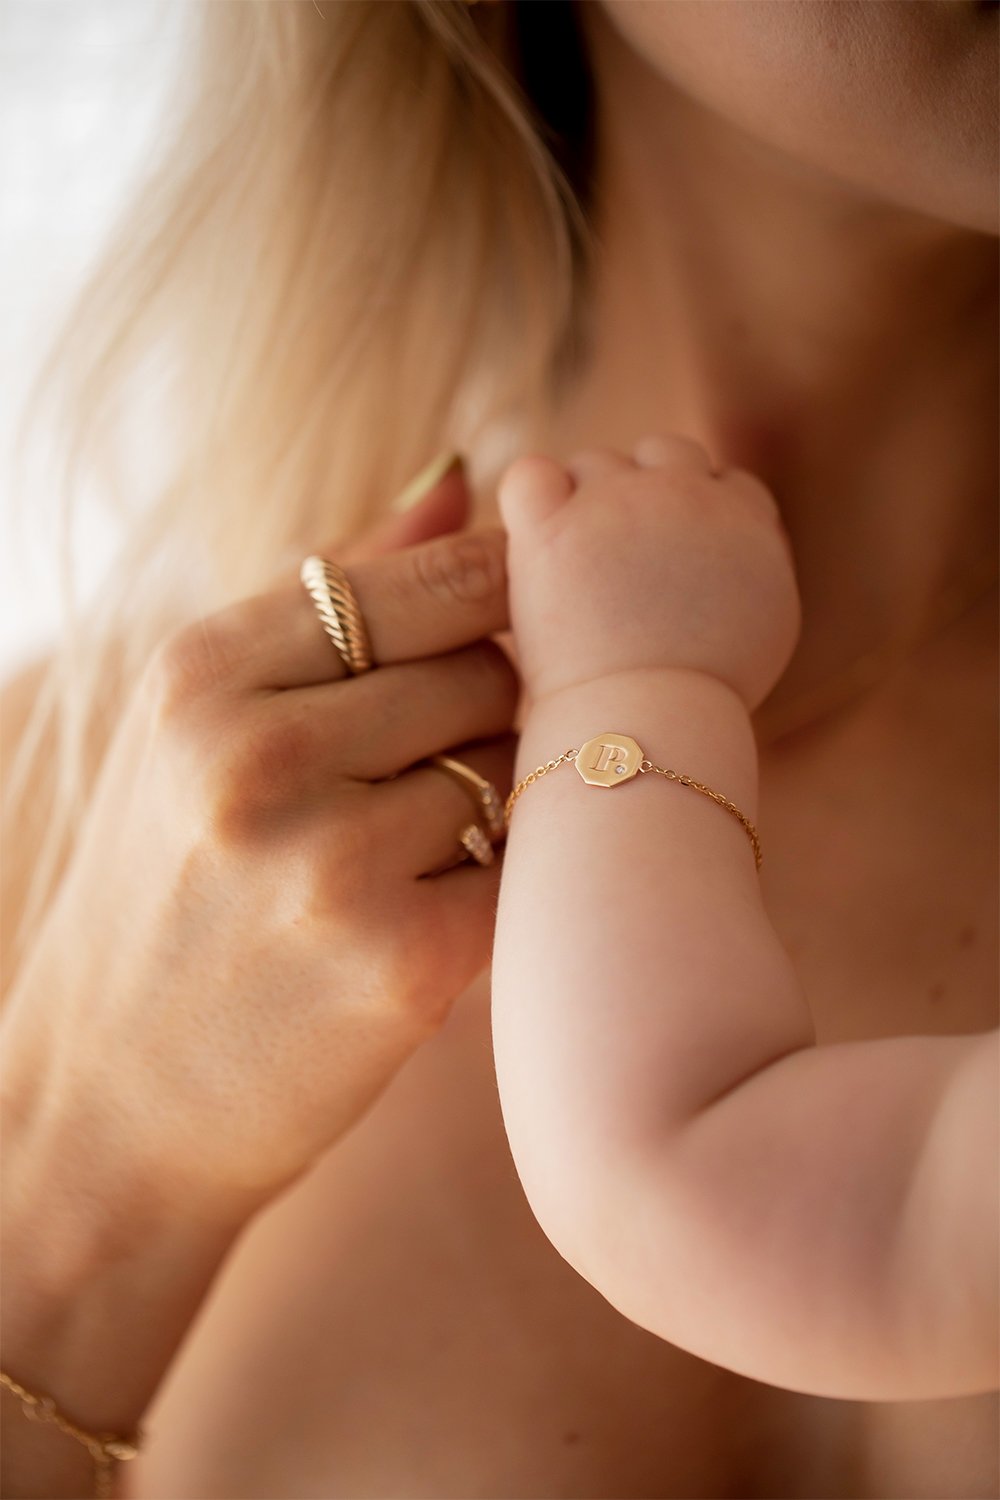 Baby Letter Bracelet | 9K White Gold